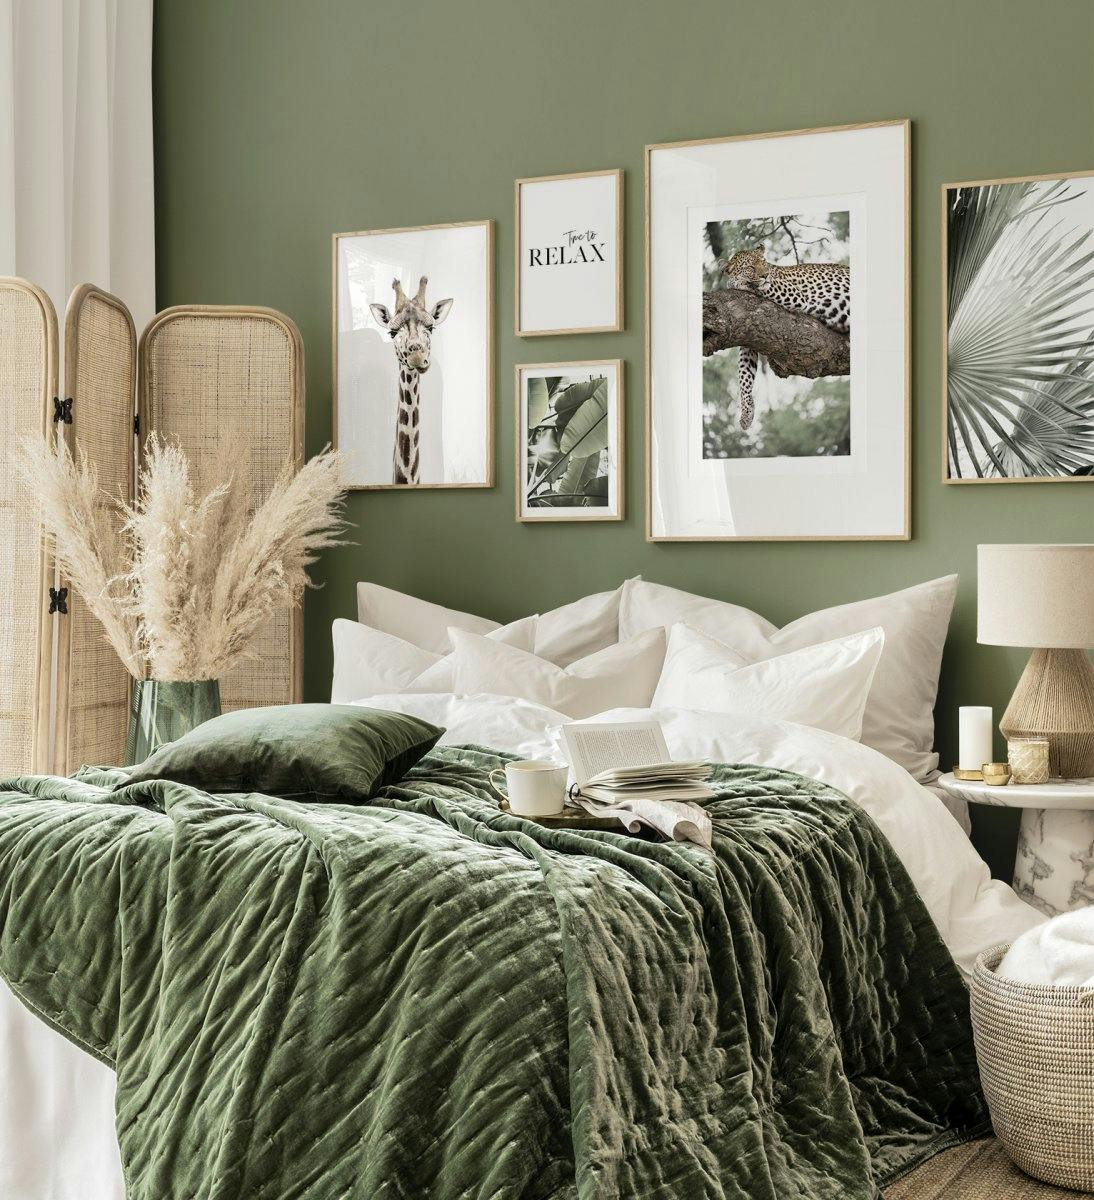 오크 프레임에 녹색 테마가 차분하게 어우러진 감각적인 침실용 갤러리월